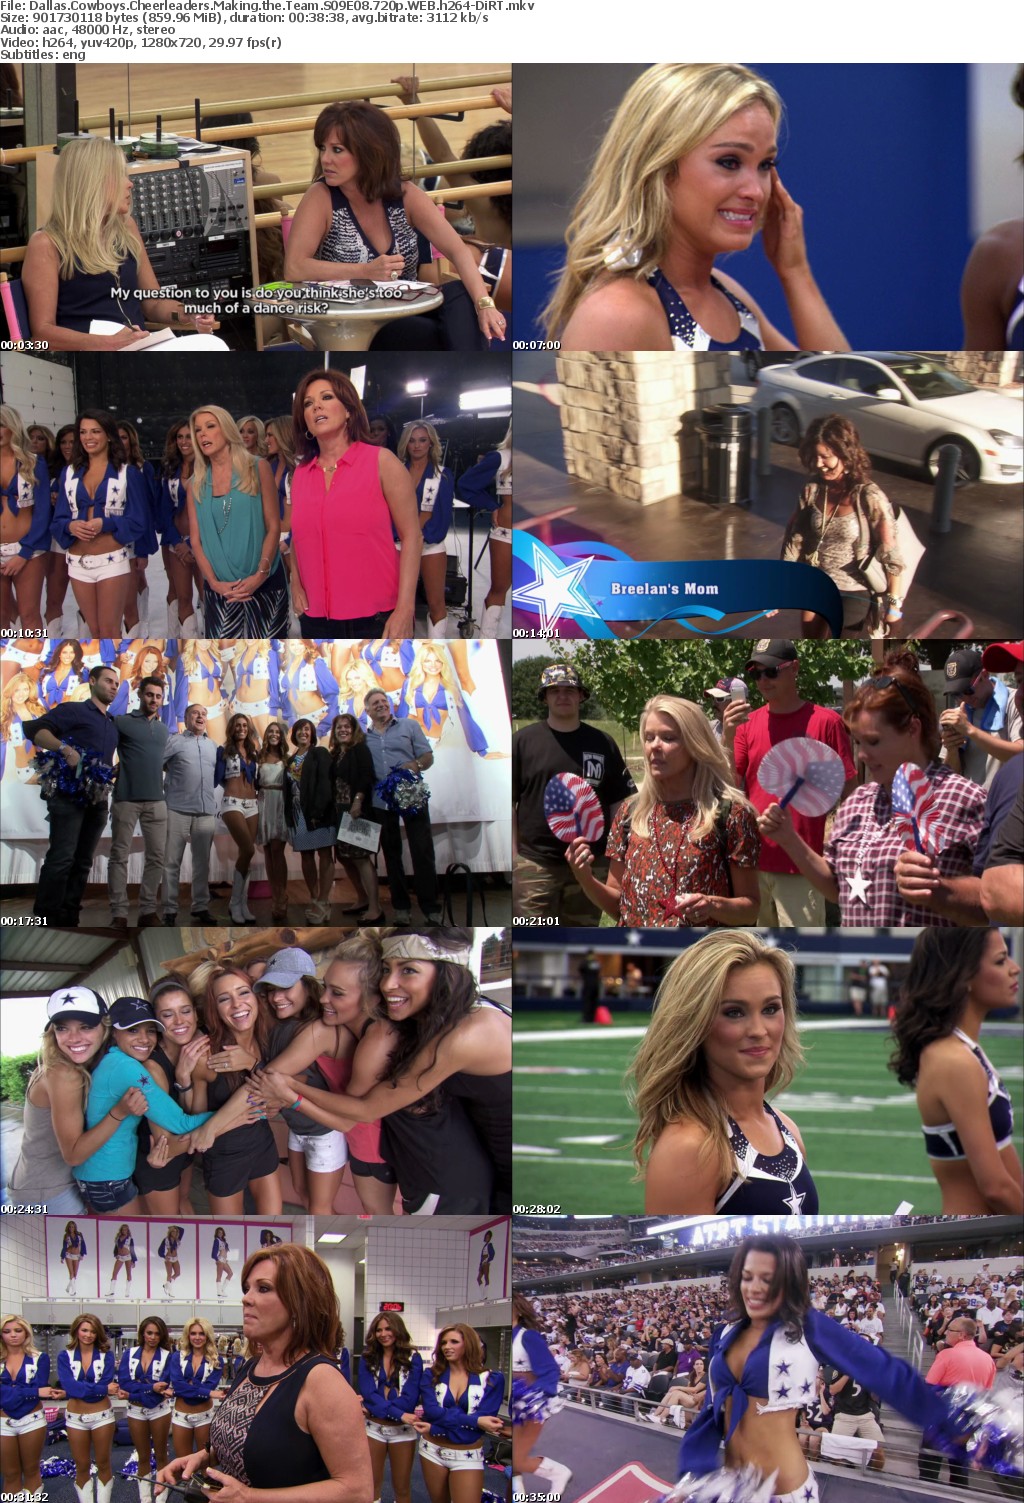 Dallas Cowboys Cheerleaders Making the Team S09E08 720p WEB h264-DiRT